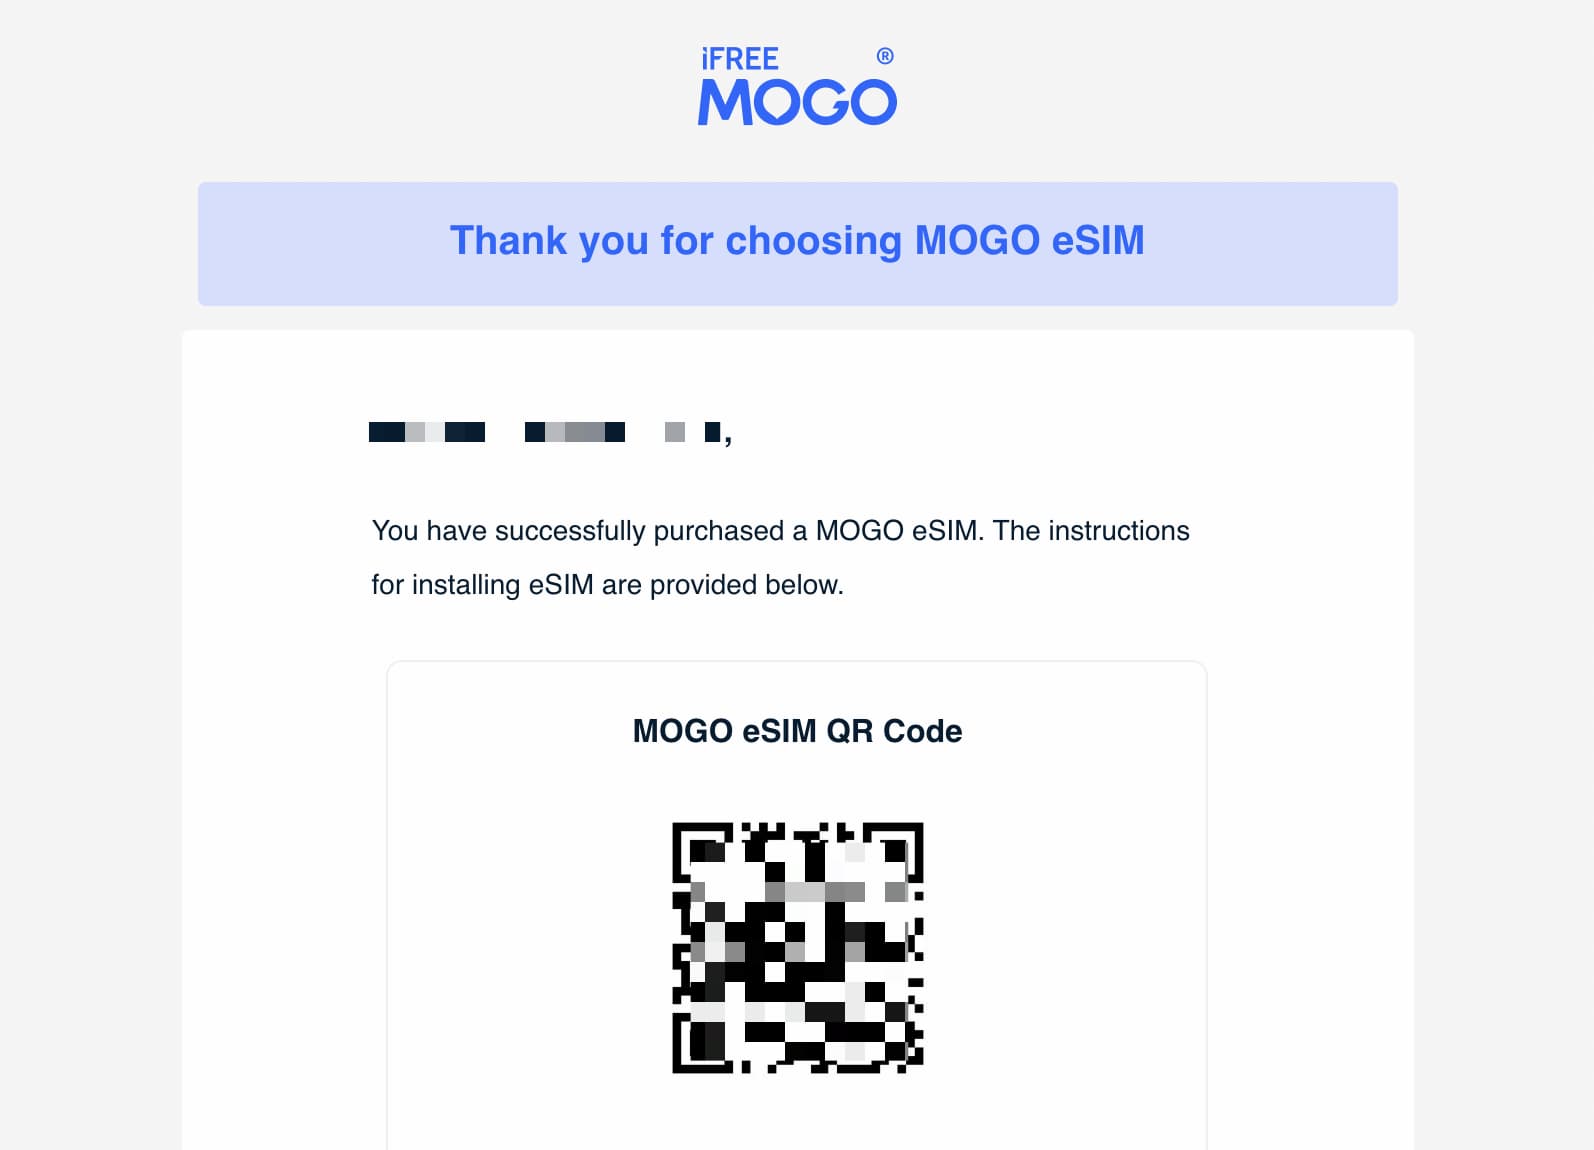 MOGO eSIM QR Code